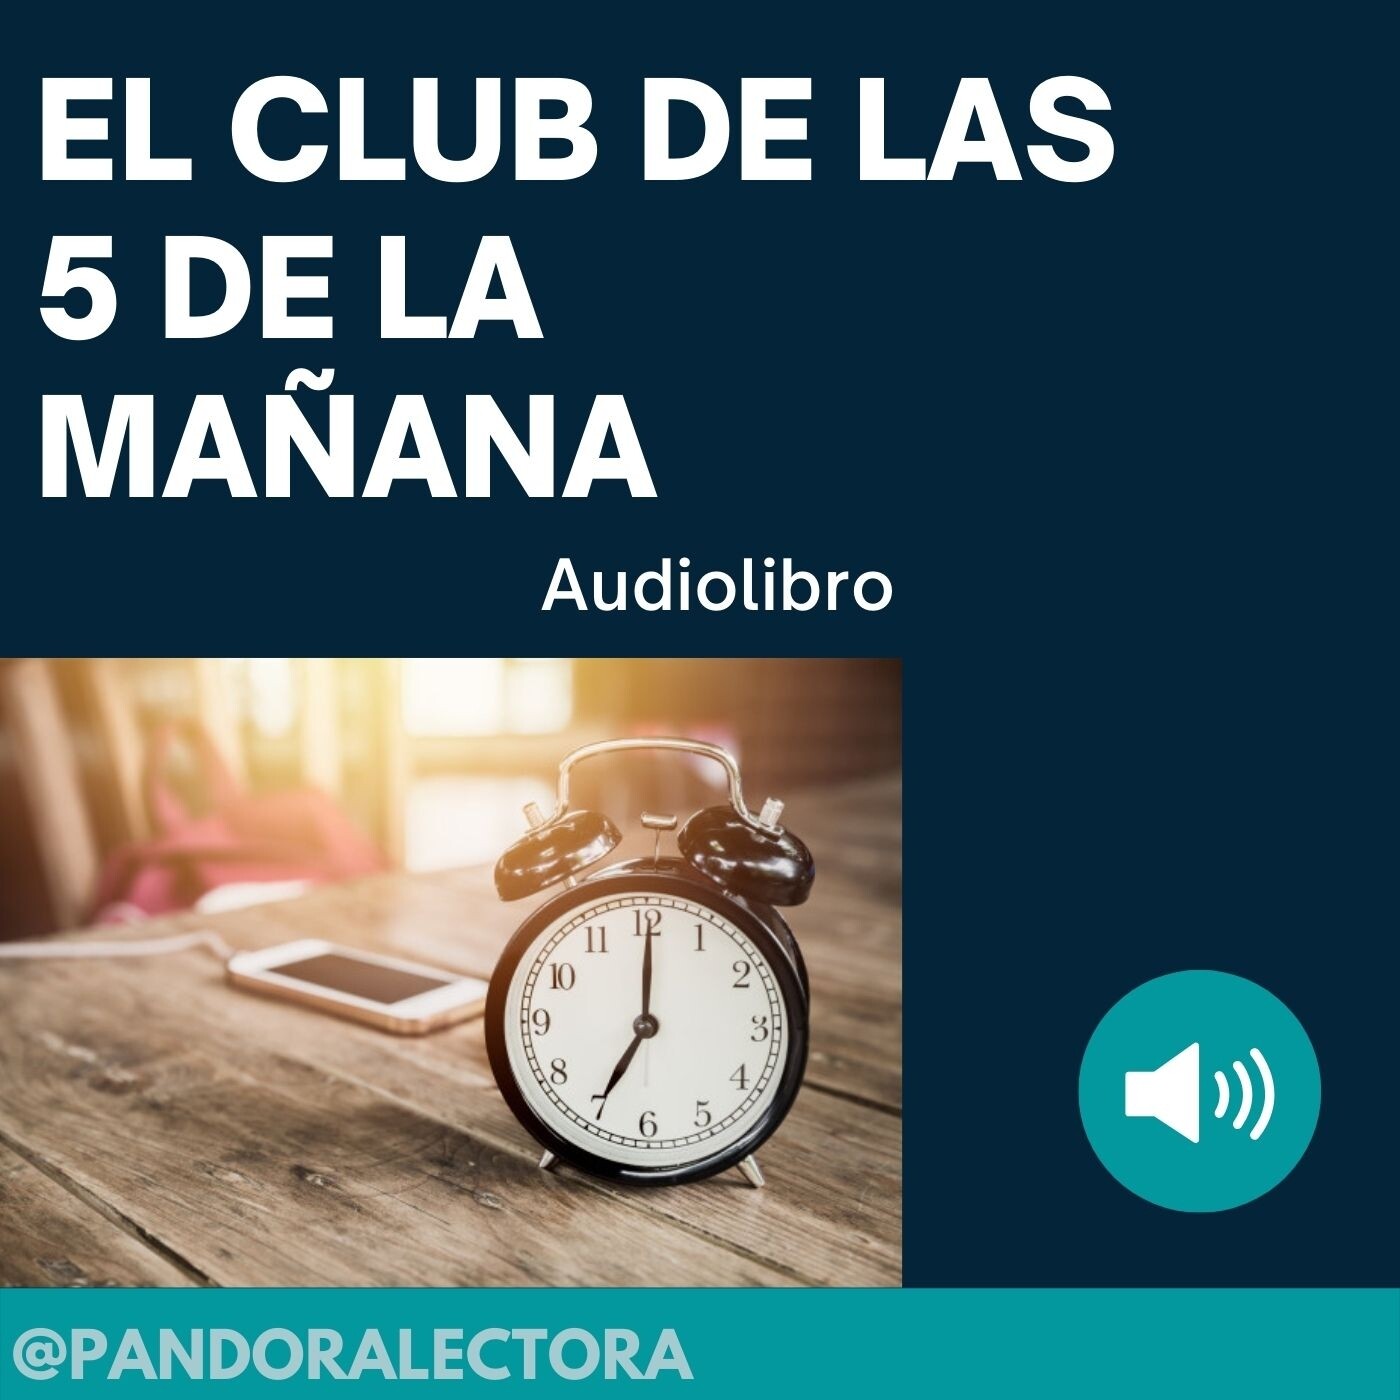 EL CLUB DE LAS 5 DE LA MAÑANA AUDIOLIBRO Podcast iVoox